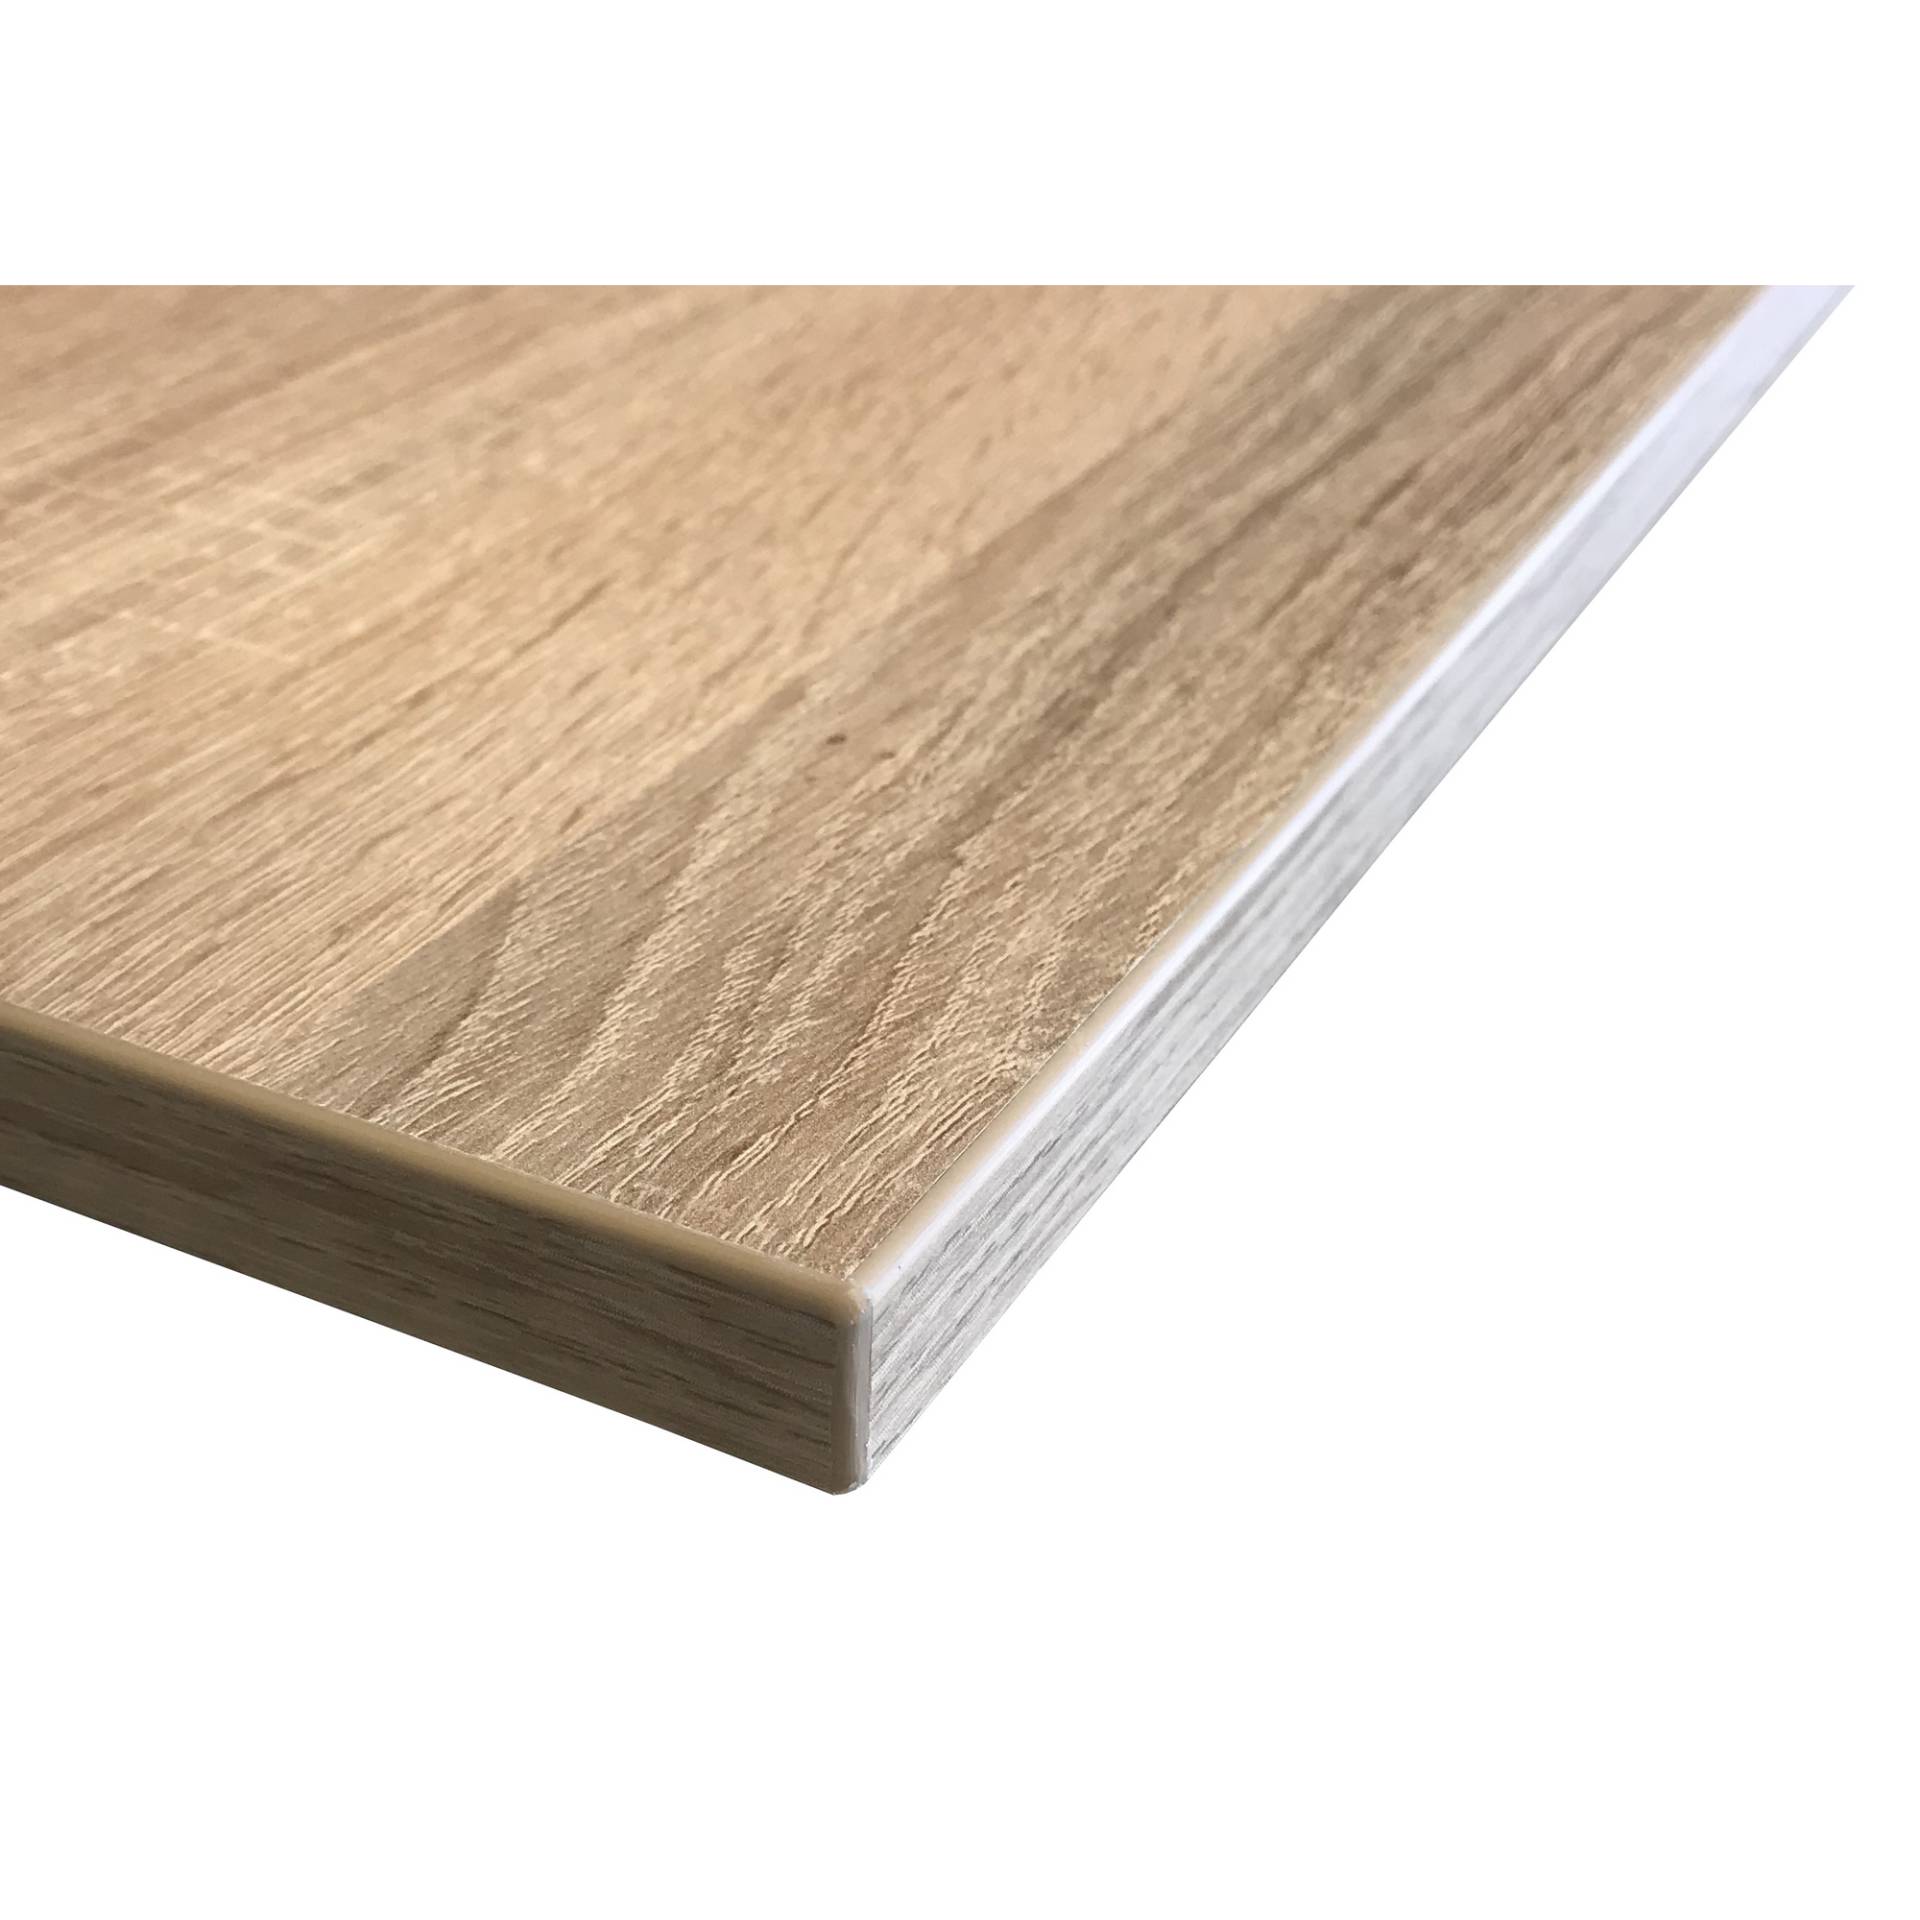 Jürgens Holzprodukte Tischplatte Dekorspan Sonoma Eiche 65 x 65 x 2,7 cm von Jürgens Holzprodukte